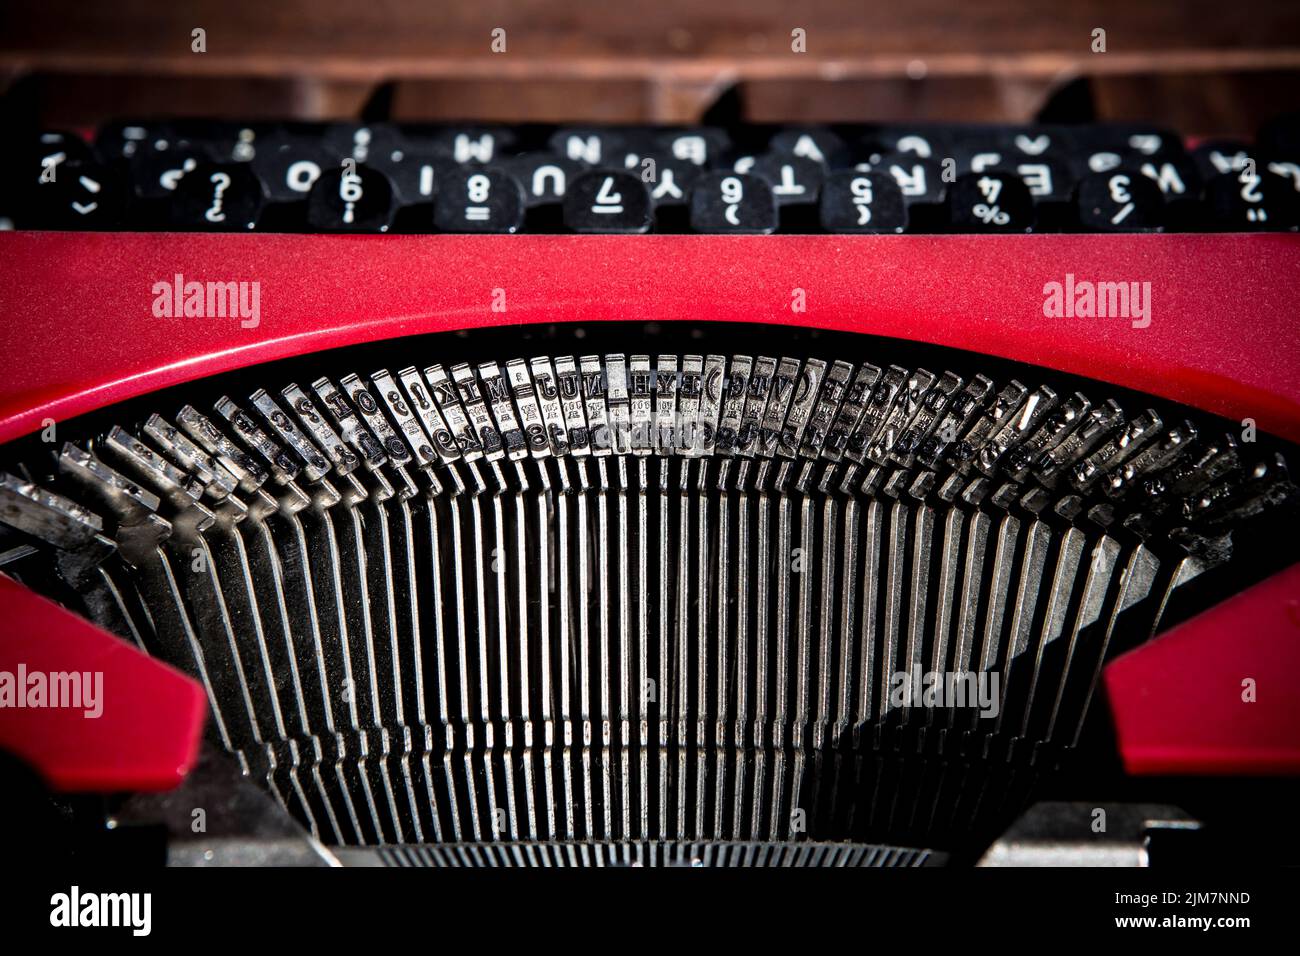 Máquina de escribir roja vintage. Primer plano de las barras de tipos Foto de stock